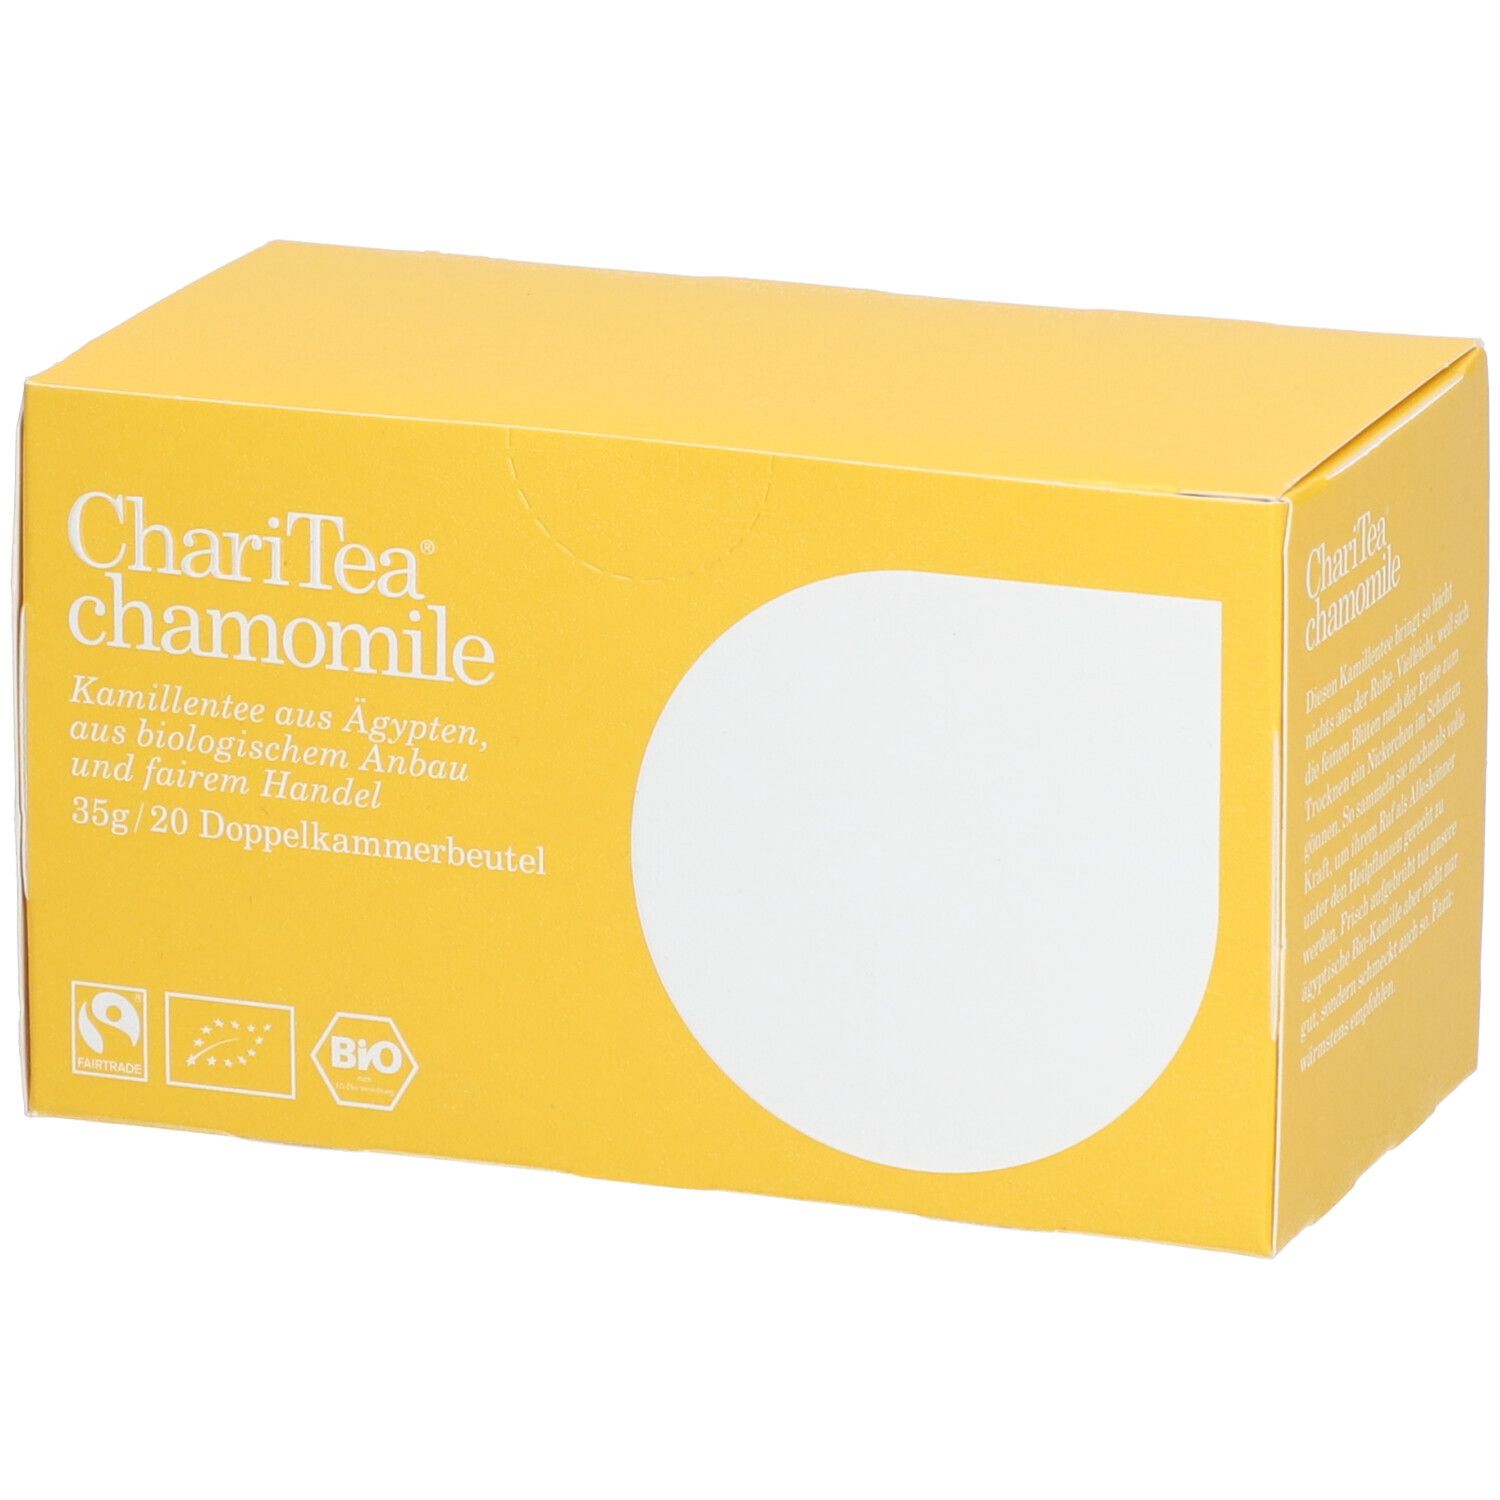 ChariTea® chamomile